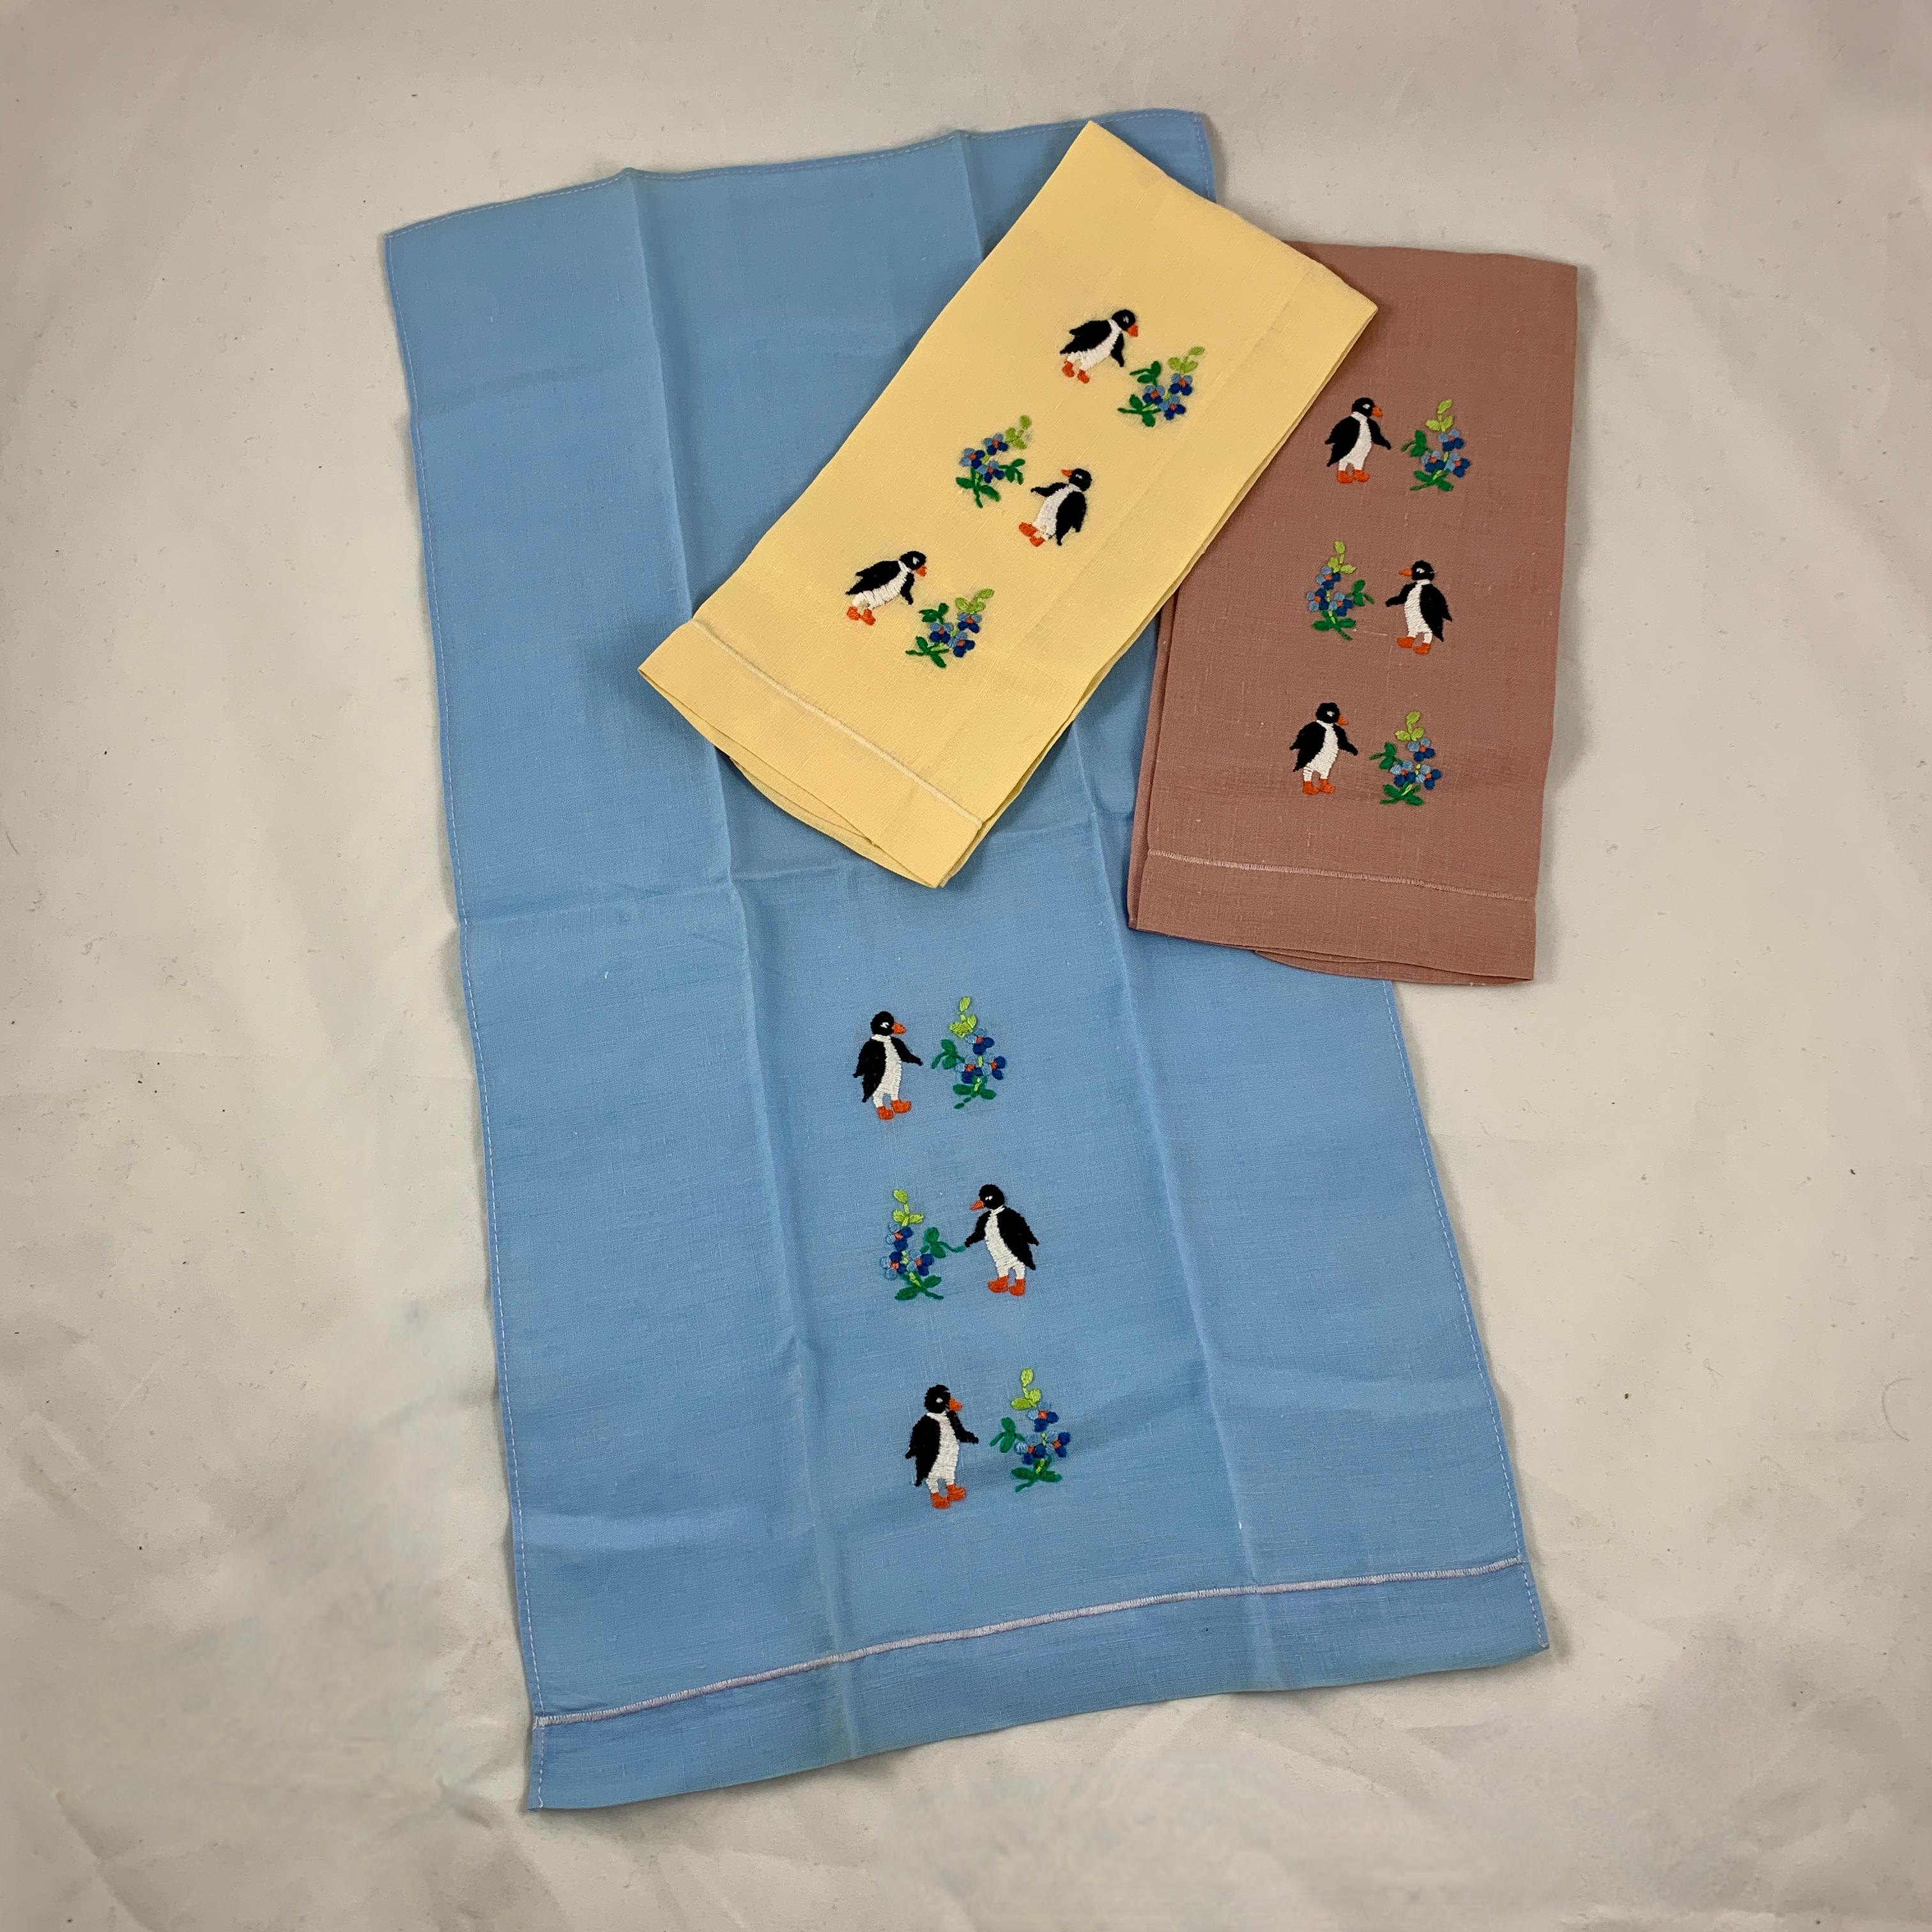 Ein charmantes Set aus drei Gästehandtüchern aus der Mitte des Jahrhunderts, handbestickt mit einem Trio von Pinguinen und Blumensträußen. In Butterblumengelb, Kornblumenblau und ziegelrotem Leinen, schön gestärkt.

Maße: 19 Zoll L x 10 Zoll